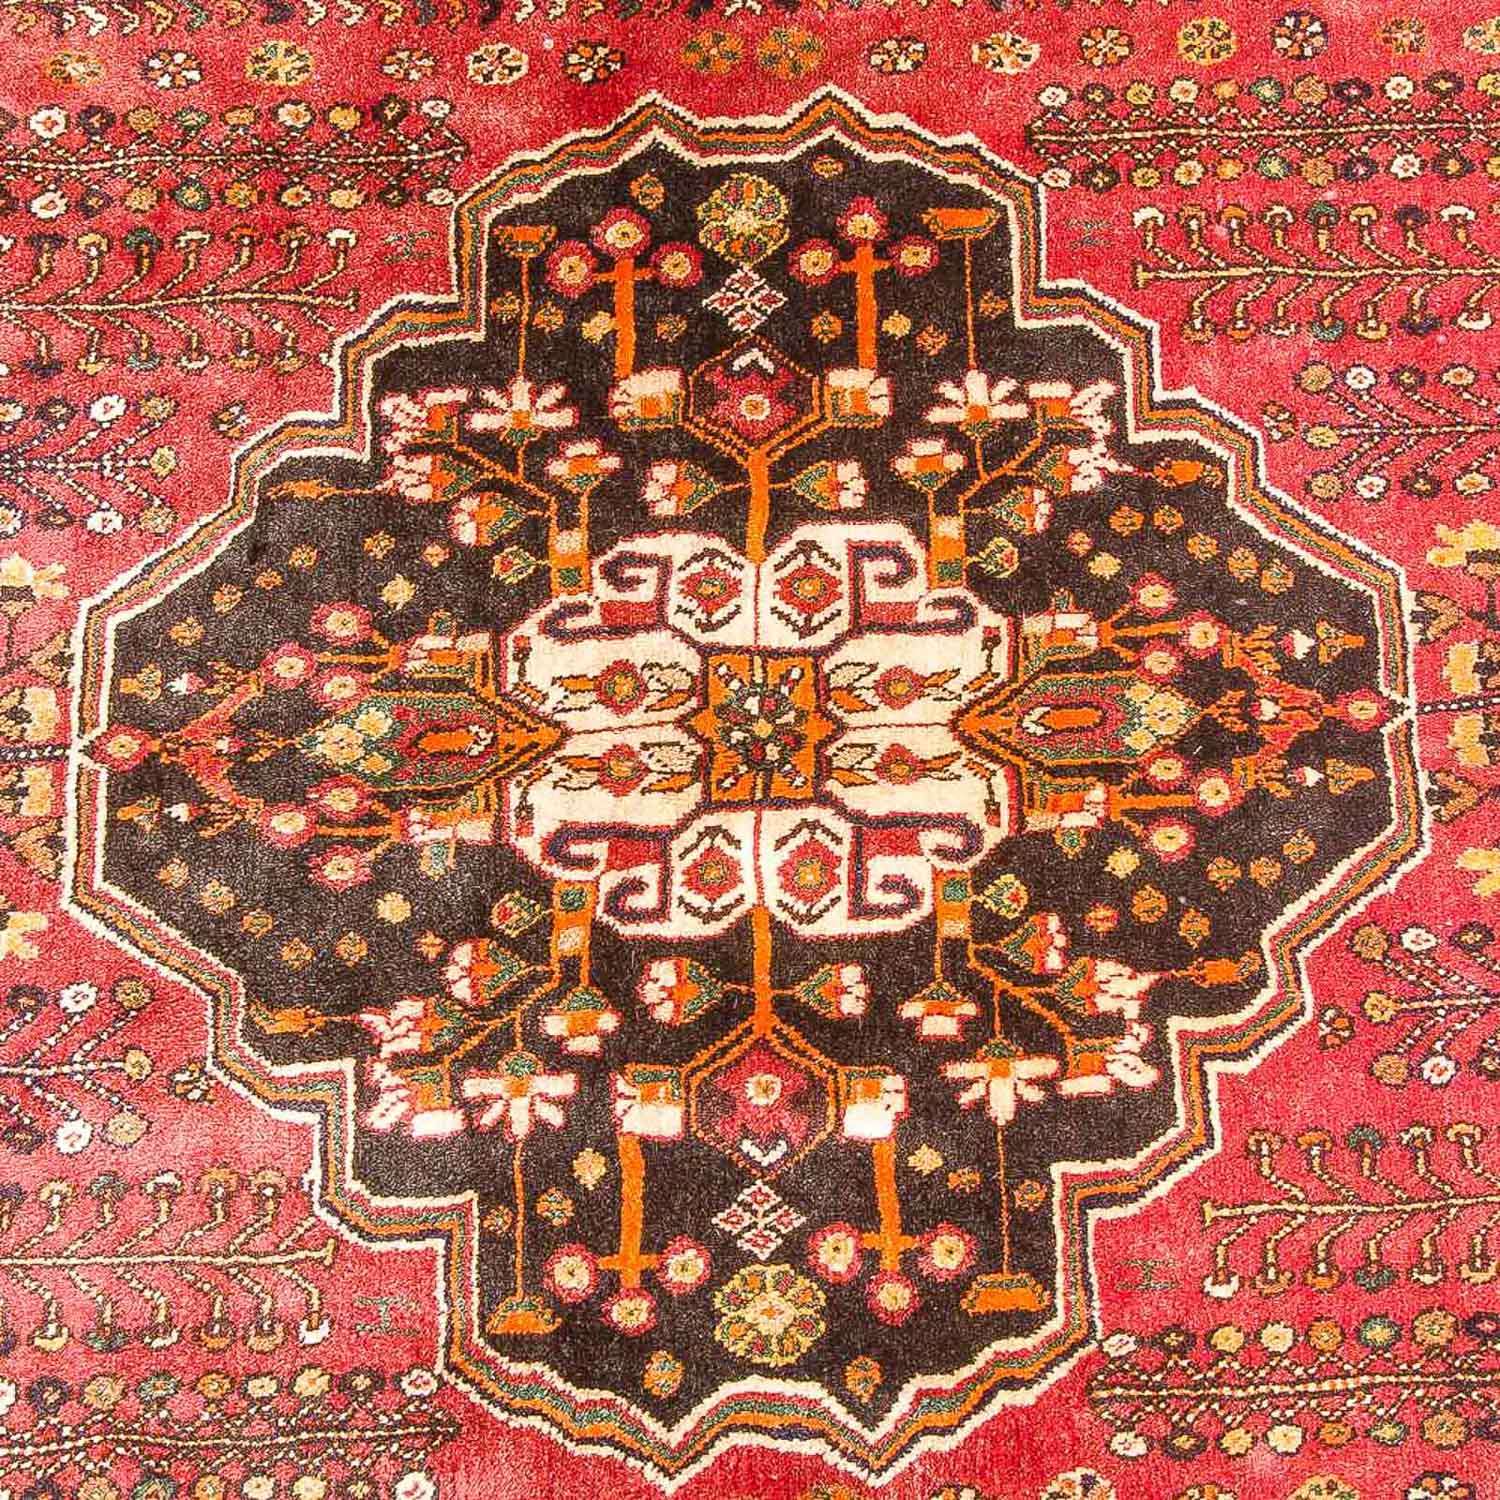 Perski dywan - Nomadyczny - 253 x 161 cm - rdza